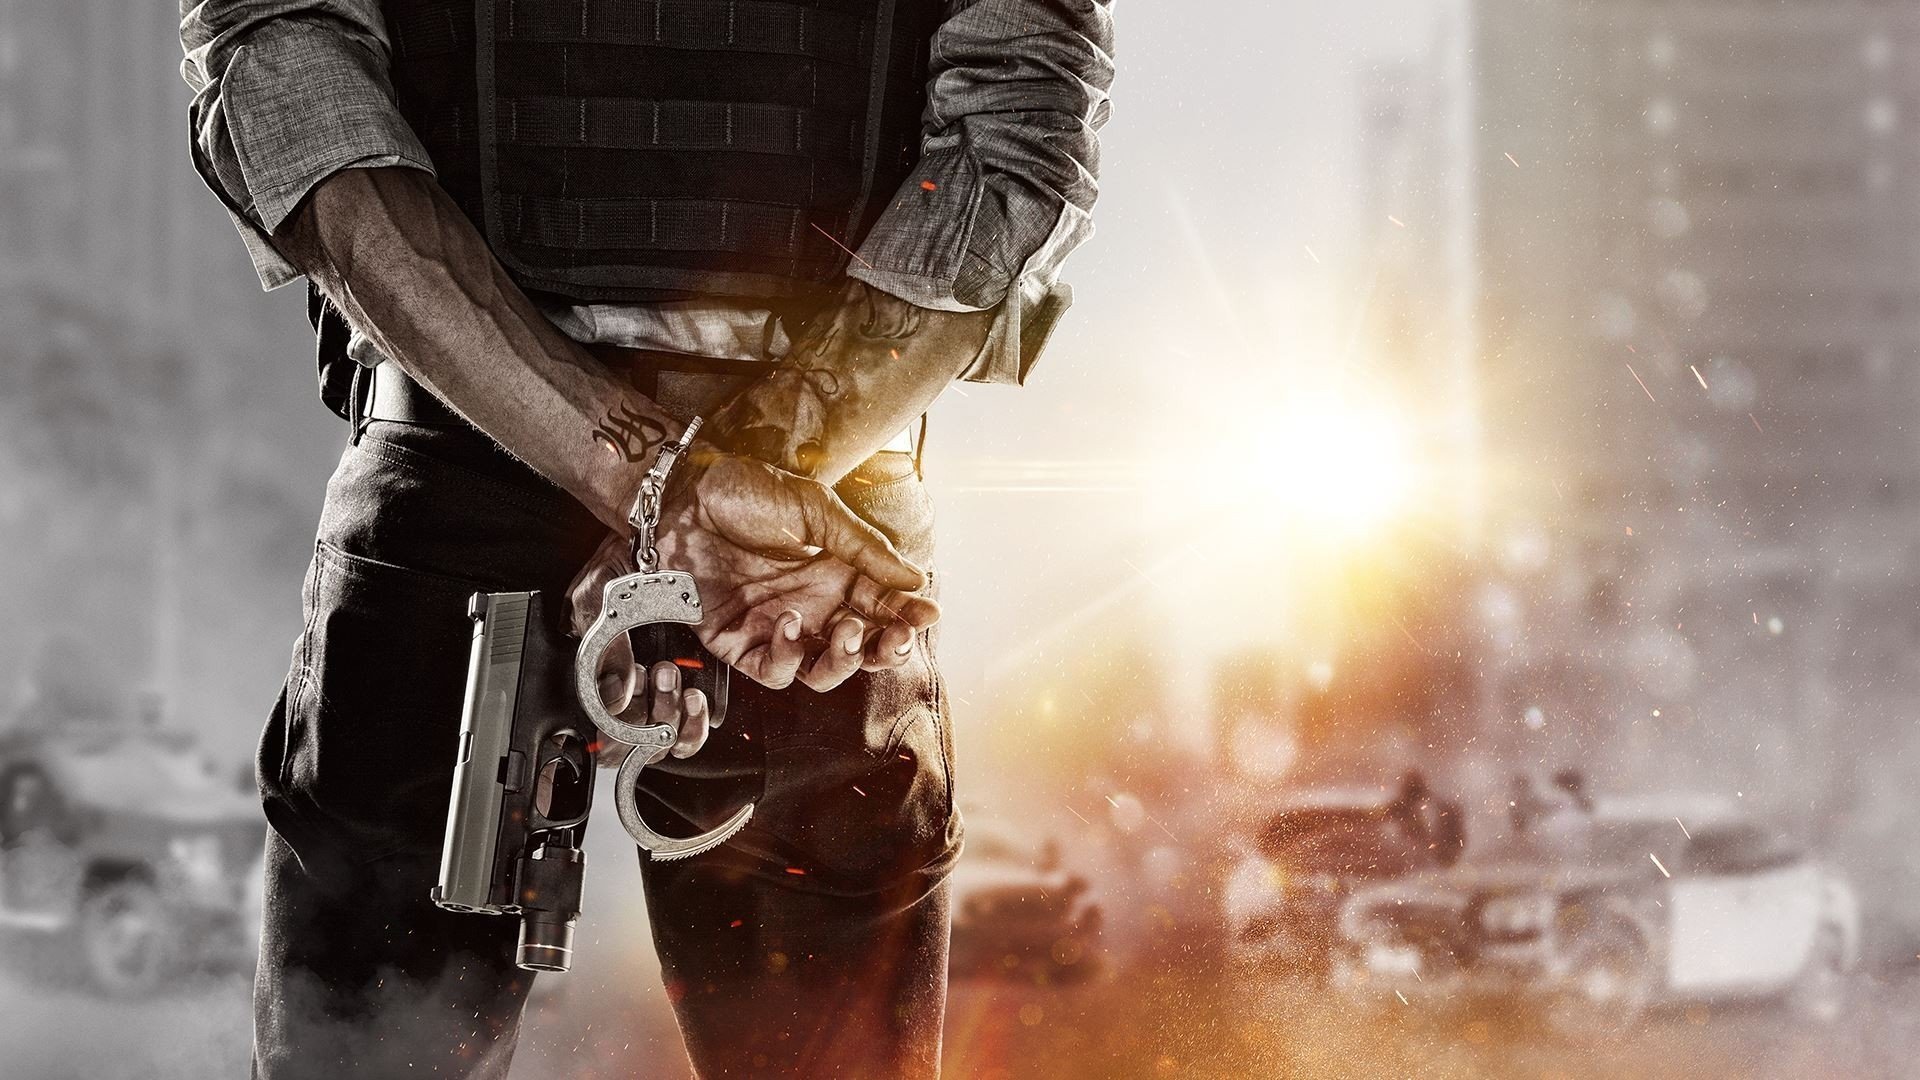 Hardline Visceral Games Electronic Arts Weapon Cop - Battlefield Hardline , HD Wallpaper & Backgrounds